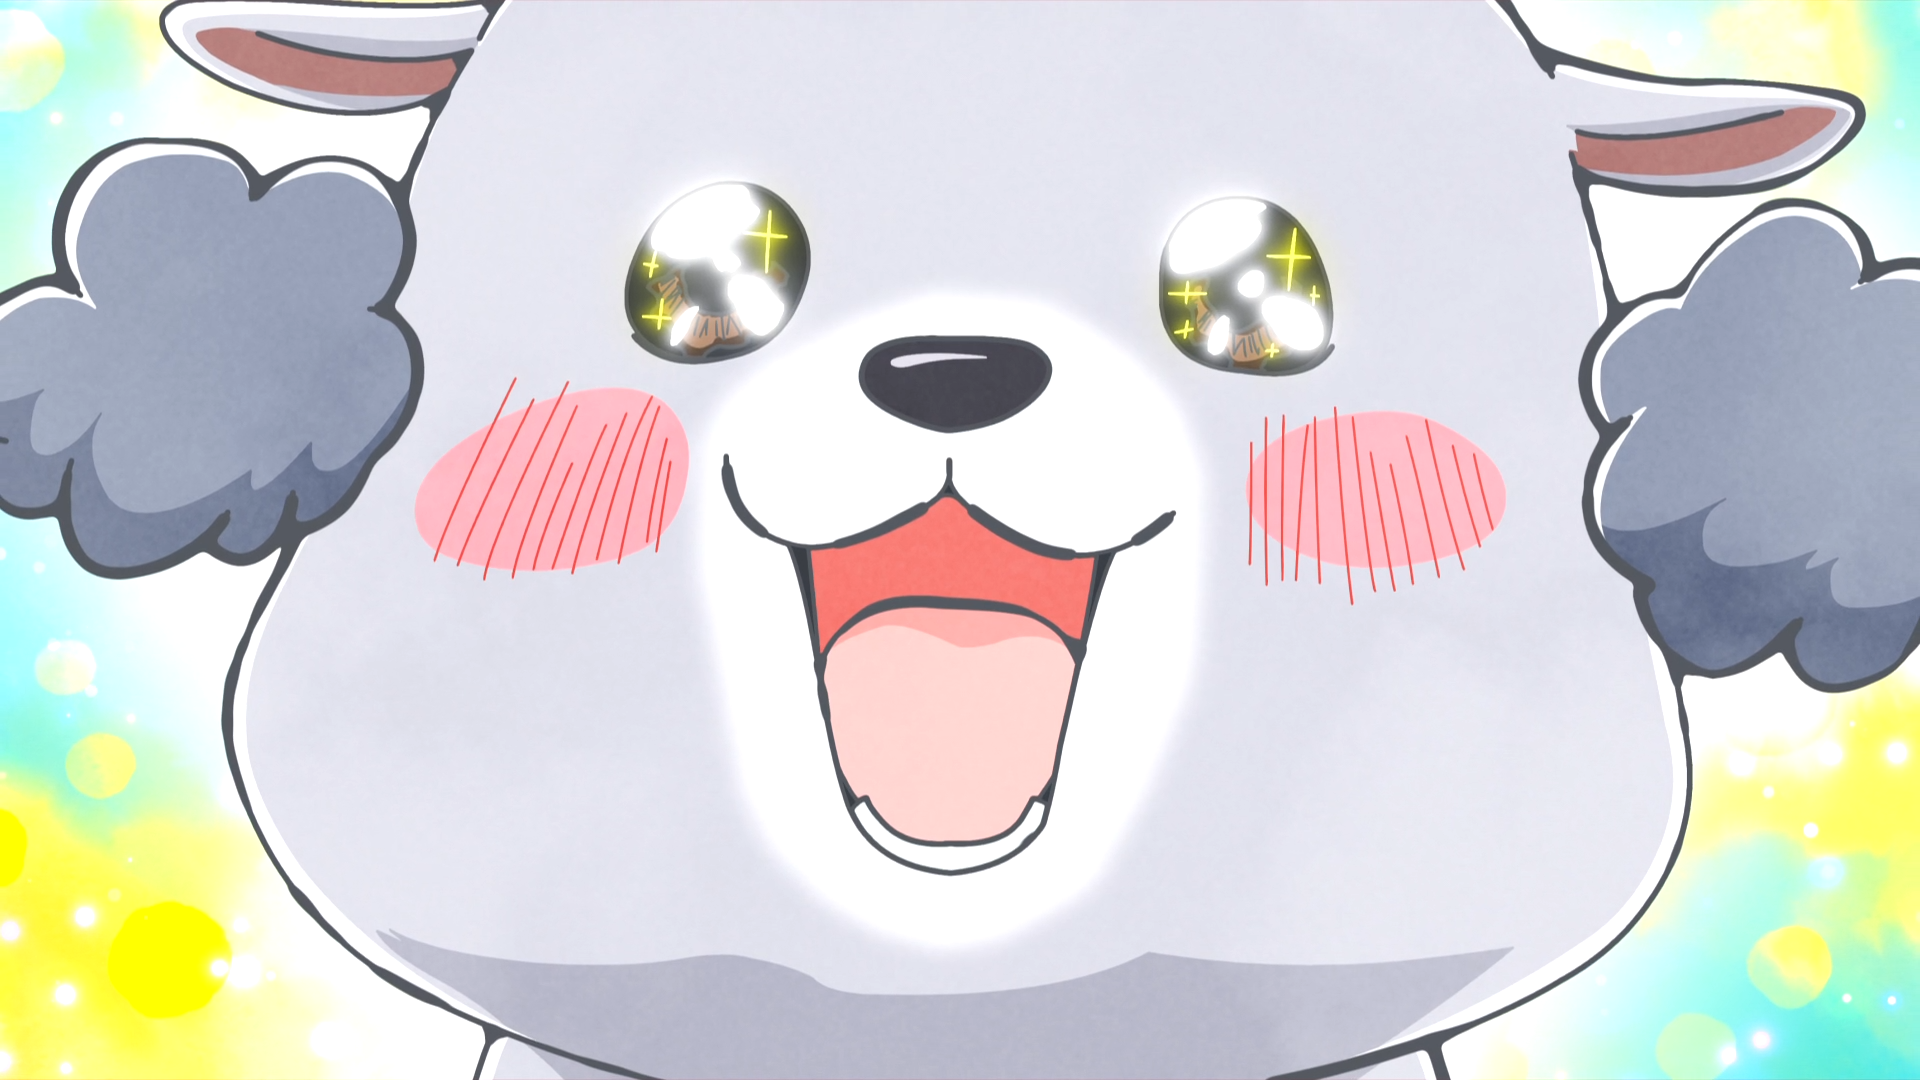 Inu-kun el perro está encantado con su nuevo y tonto corte de pelo en una escena del anime de televisión With a Dog AND a Cat, Every Day is Fun.